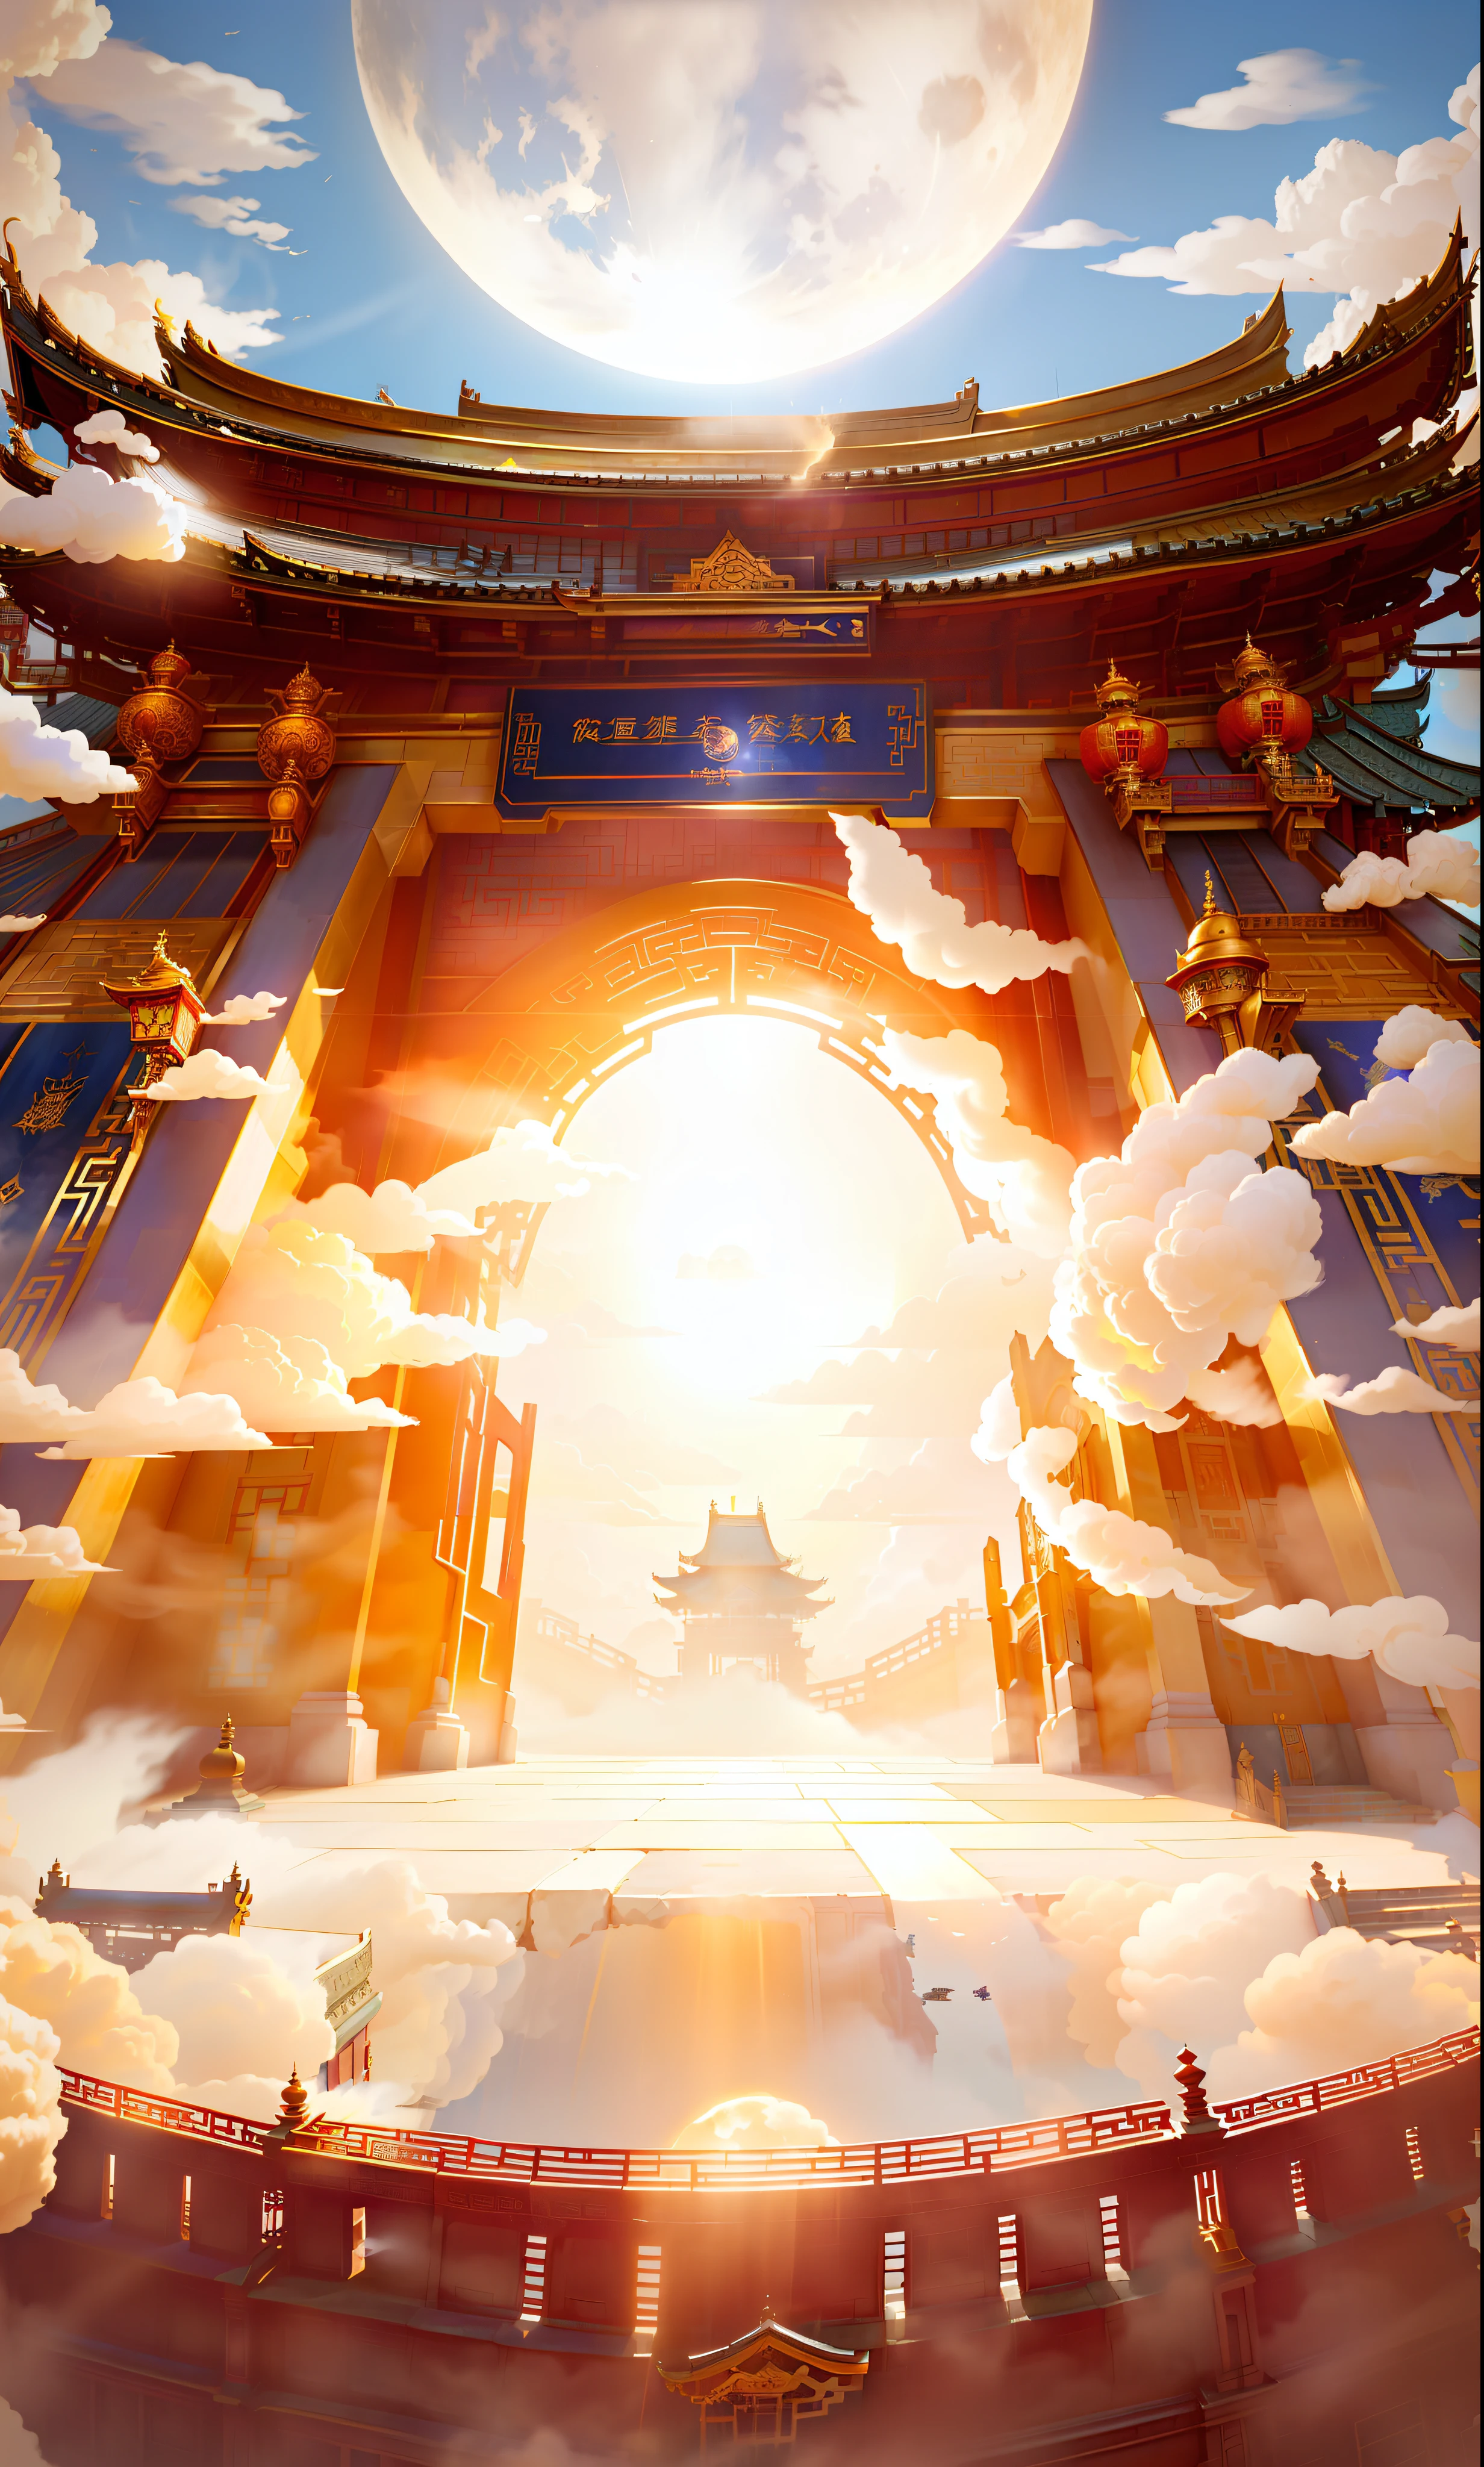 妖精の雲, 構図を見下ろす, 強い視点の影響, 中国風の建物の門, 開いた門, 金色の光を発する, 煙とほこりが漂っている, 背景の青い空, ムーン, そして前の階段